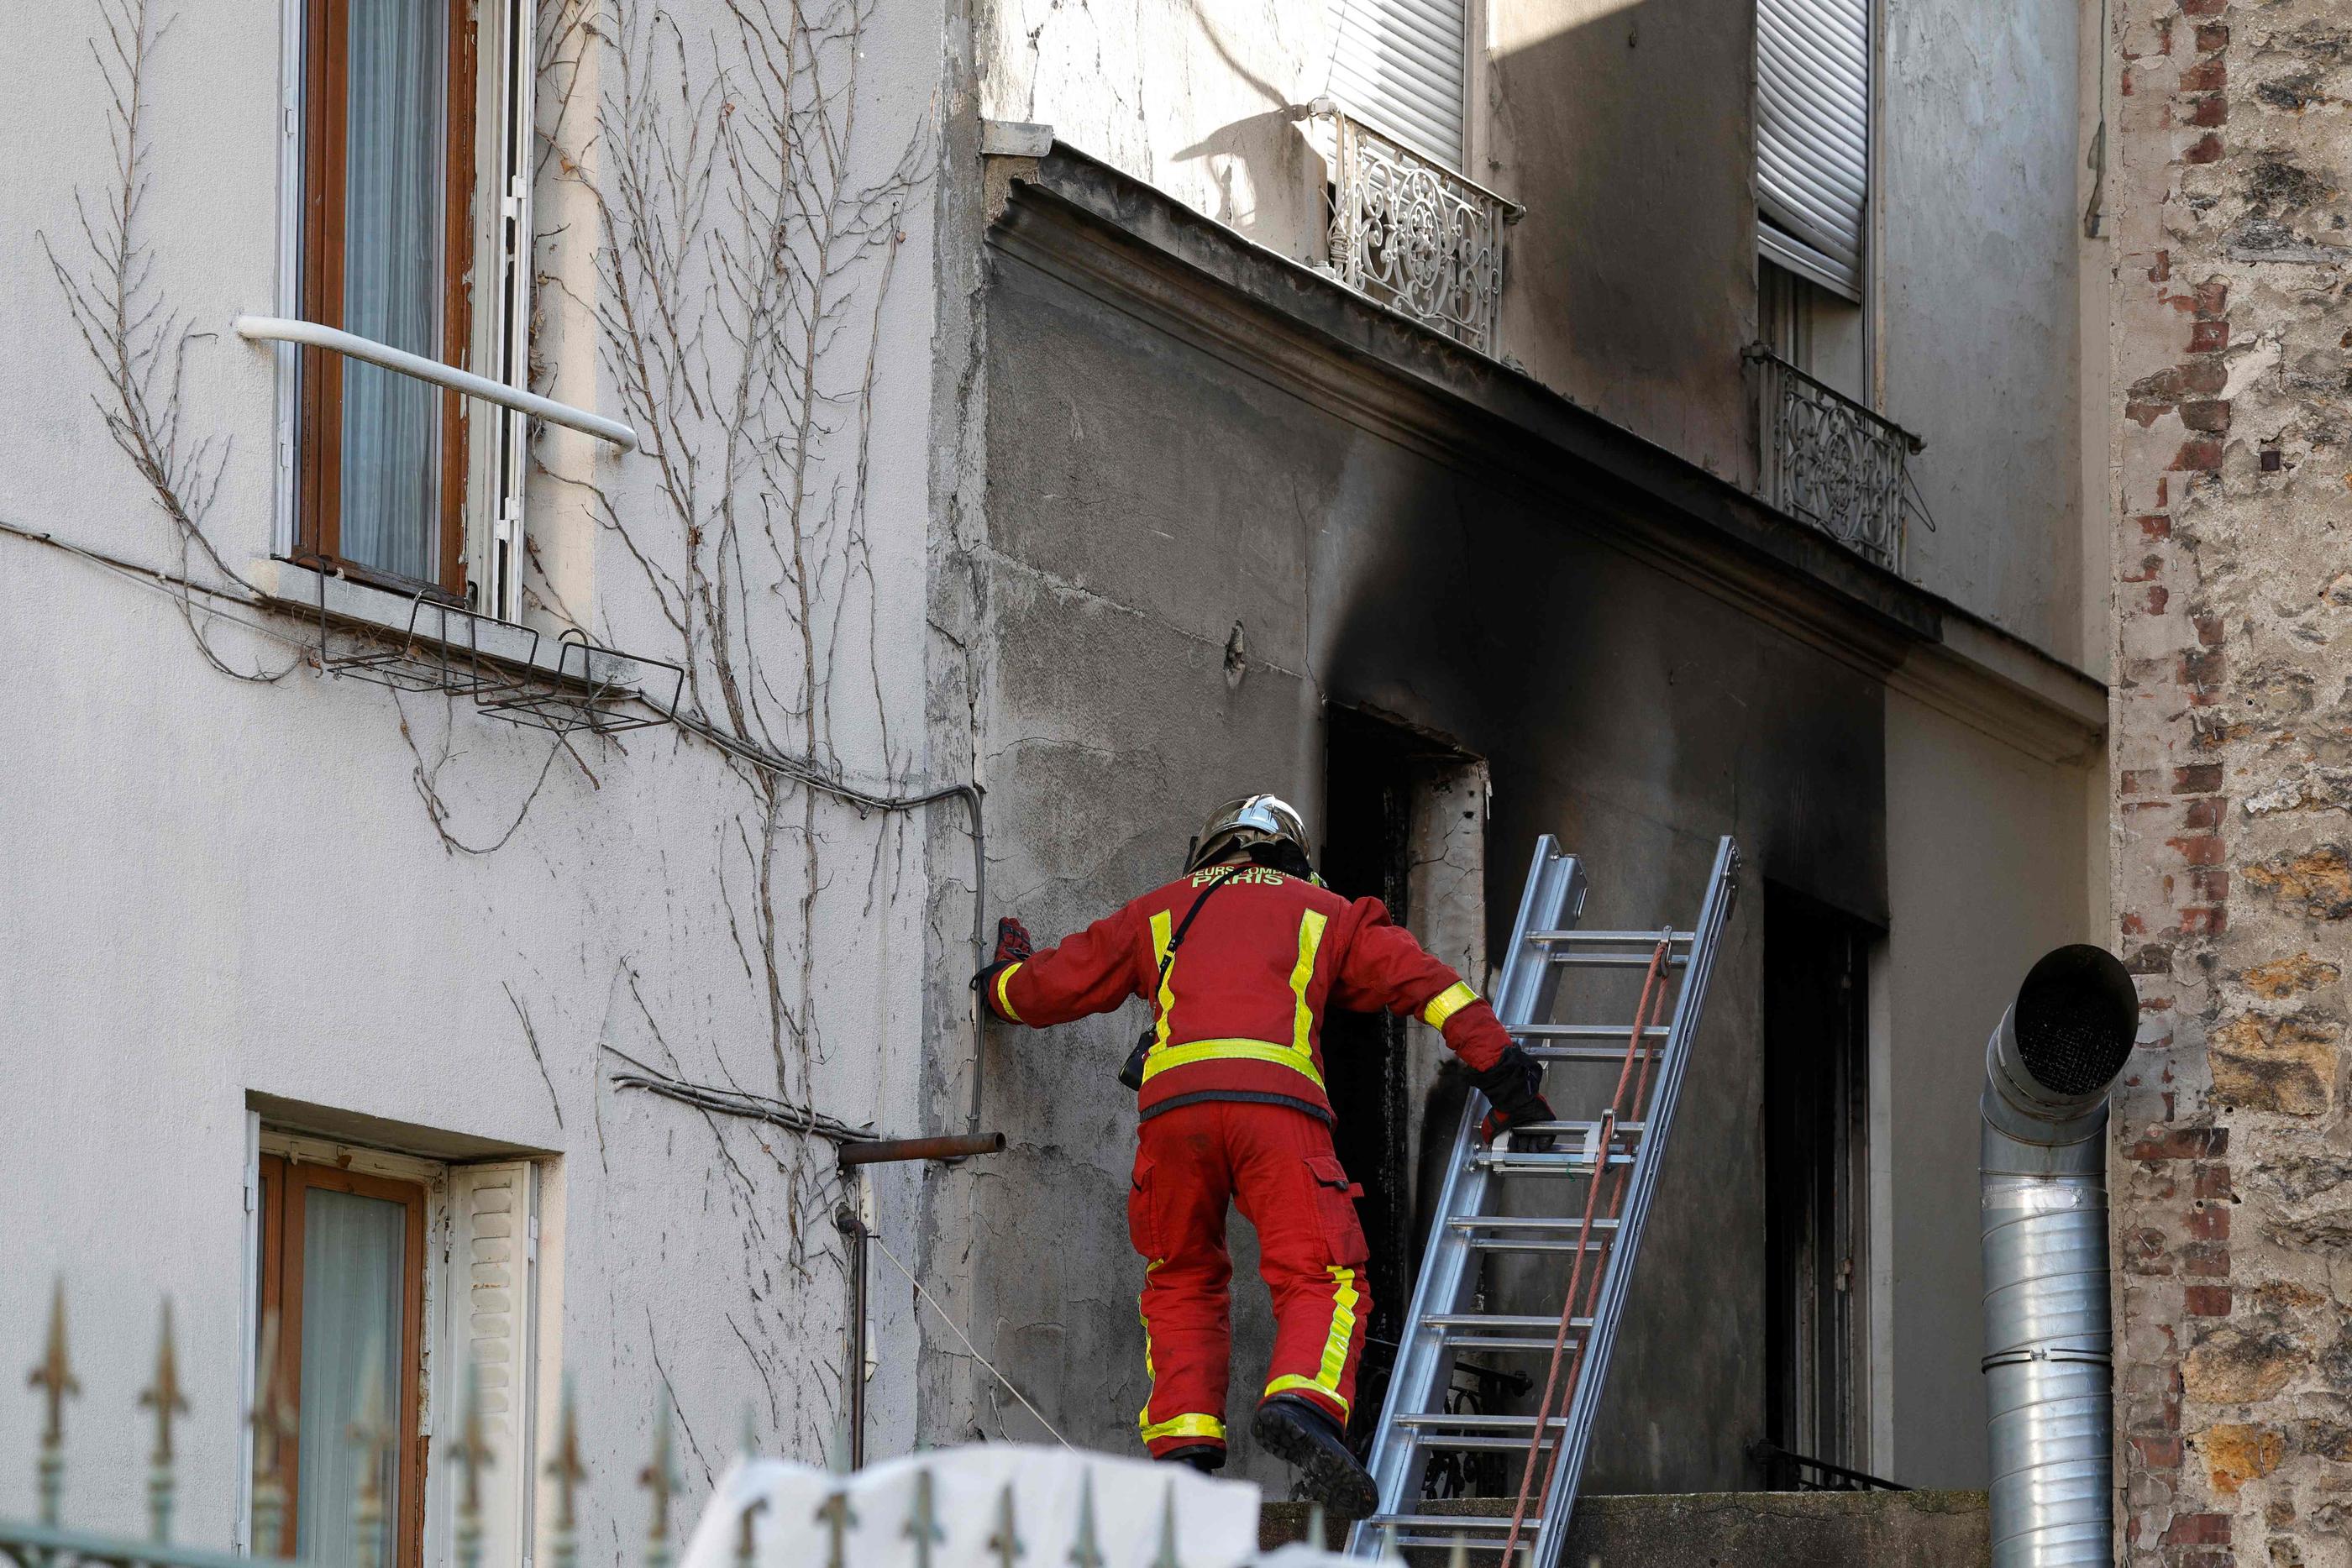 Stains (Seine-Saint-Denis), ce samedi 25 novembre. L'incendie qui s'est déclaré dans la nuit a mobilisé près de 90 pompiers et 24 engins. AFP/Geoffroy Van Der Hasselt